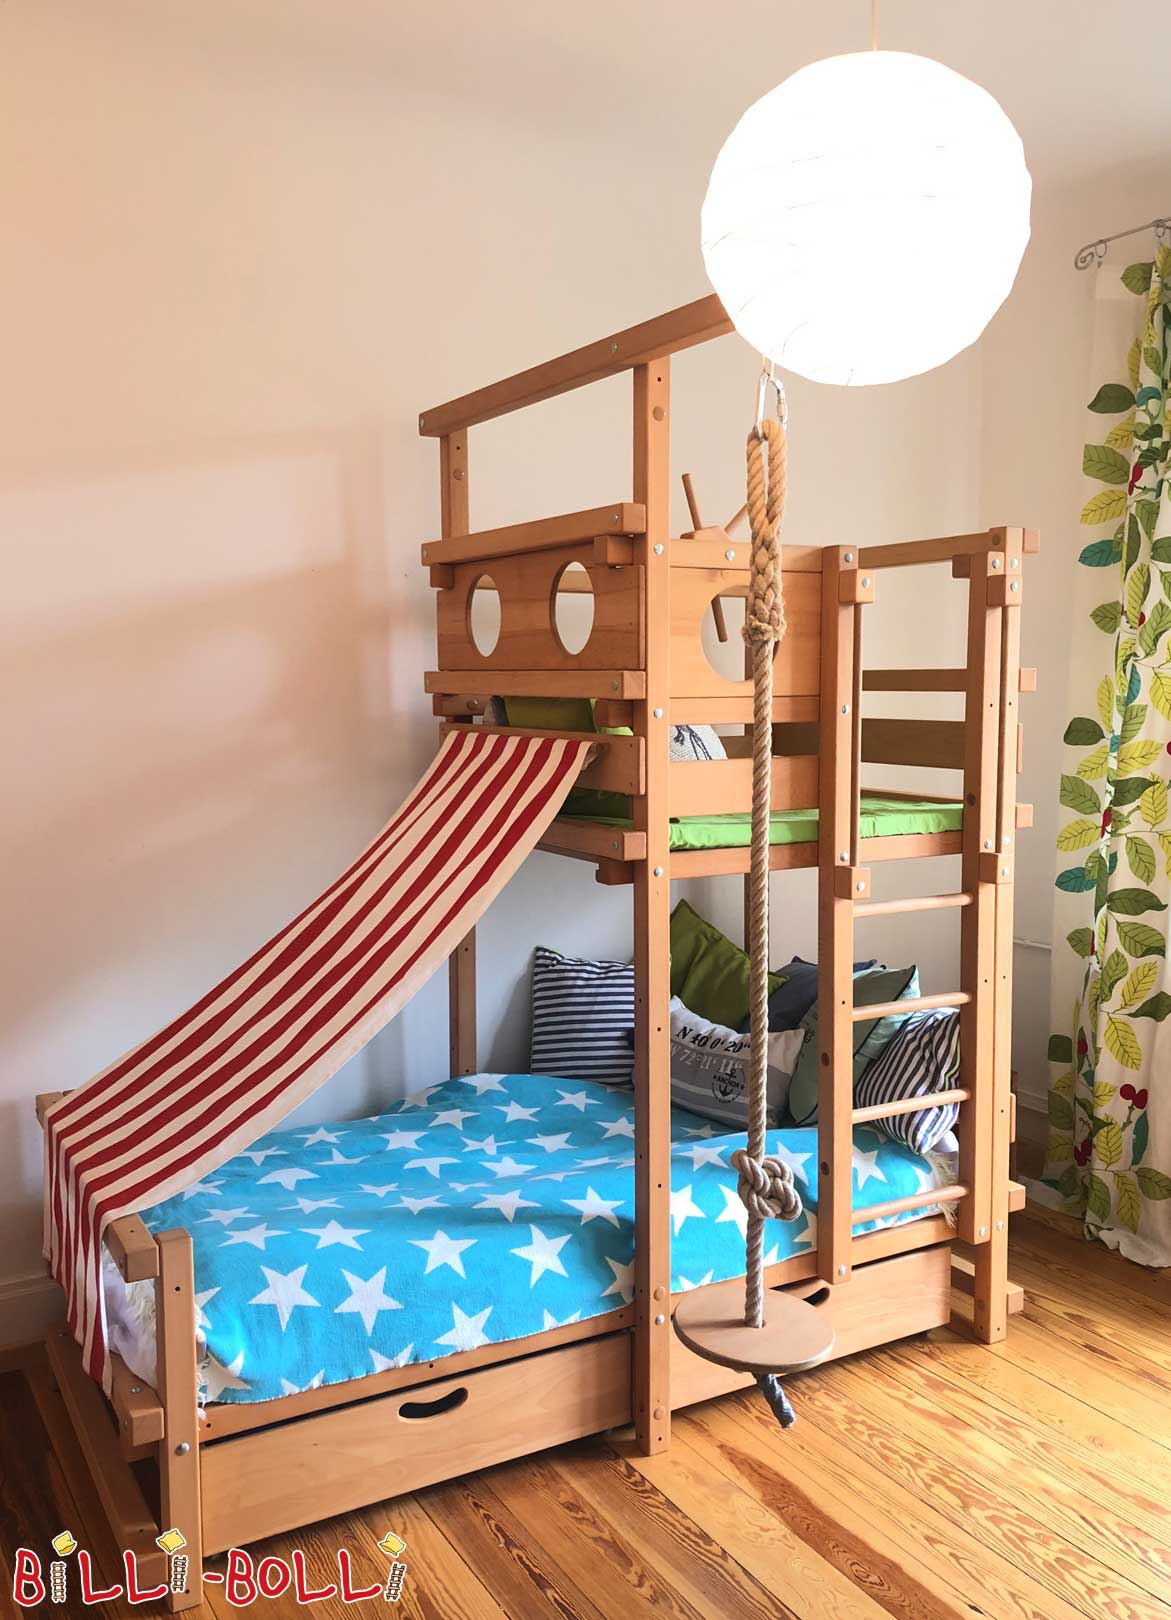 Cama para buhardilla: la ingeniosa cama de juegos para las habitaciones abuhardilladas